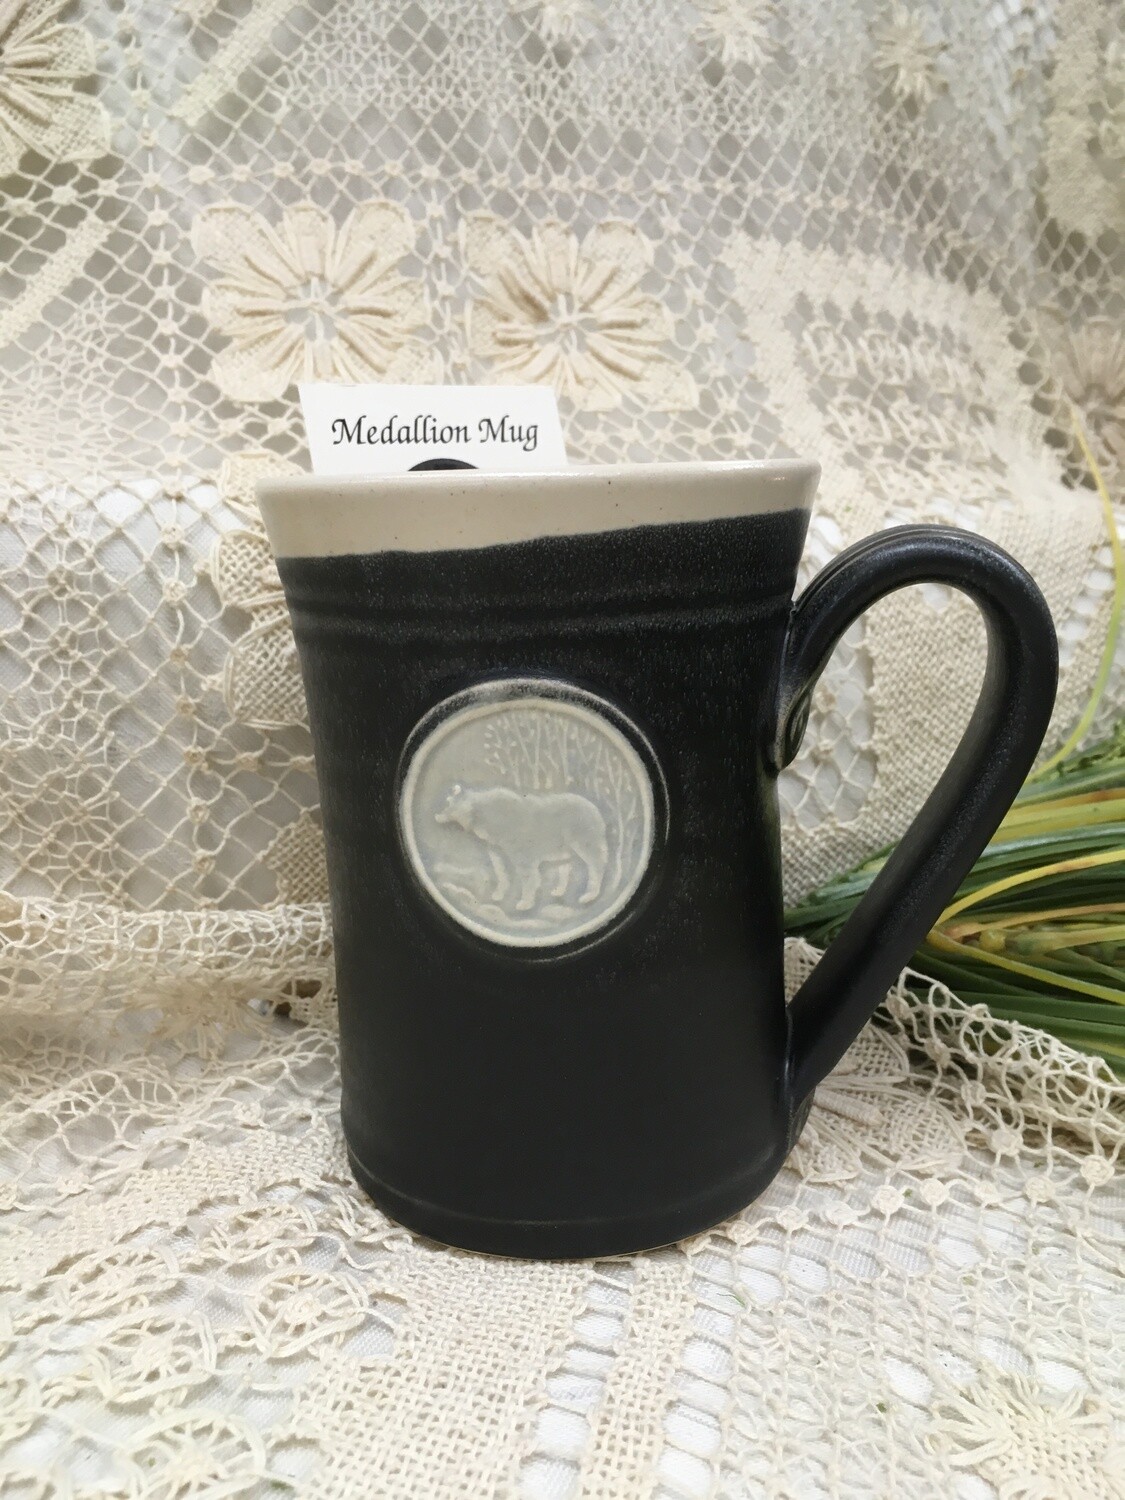 Medallion Large Mug, Bear, Black & White - Pavlo Pottery - Canadian Handmade